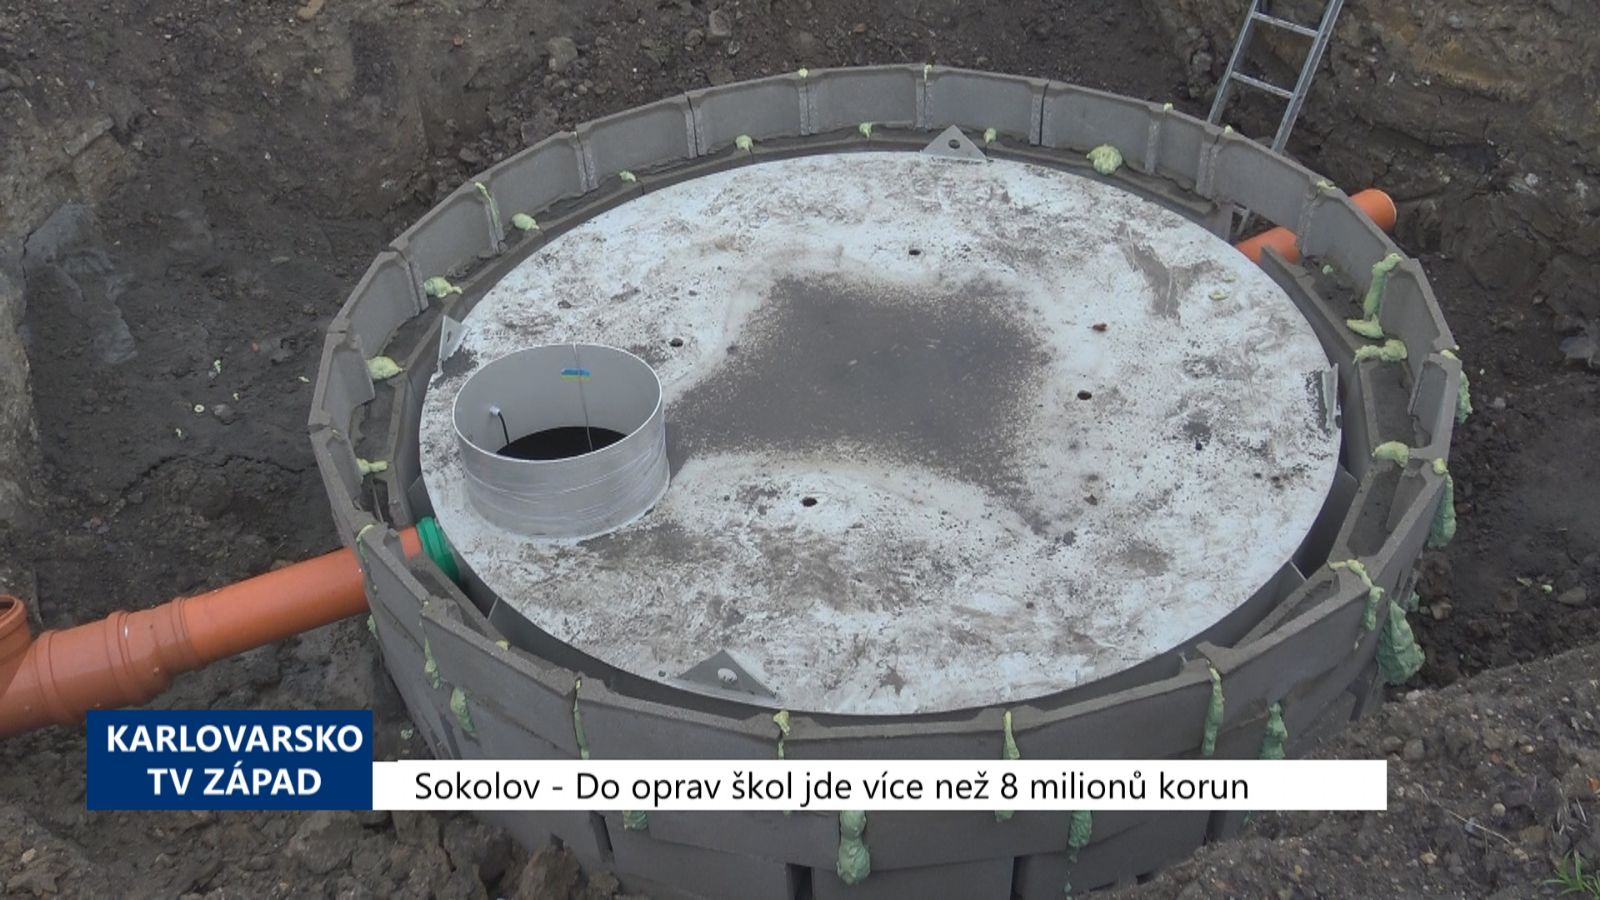 Sokolov: Do oprav škol jde více než 8 milionů korun (TV Západ)	